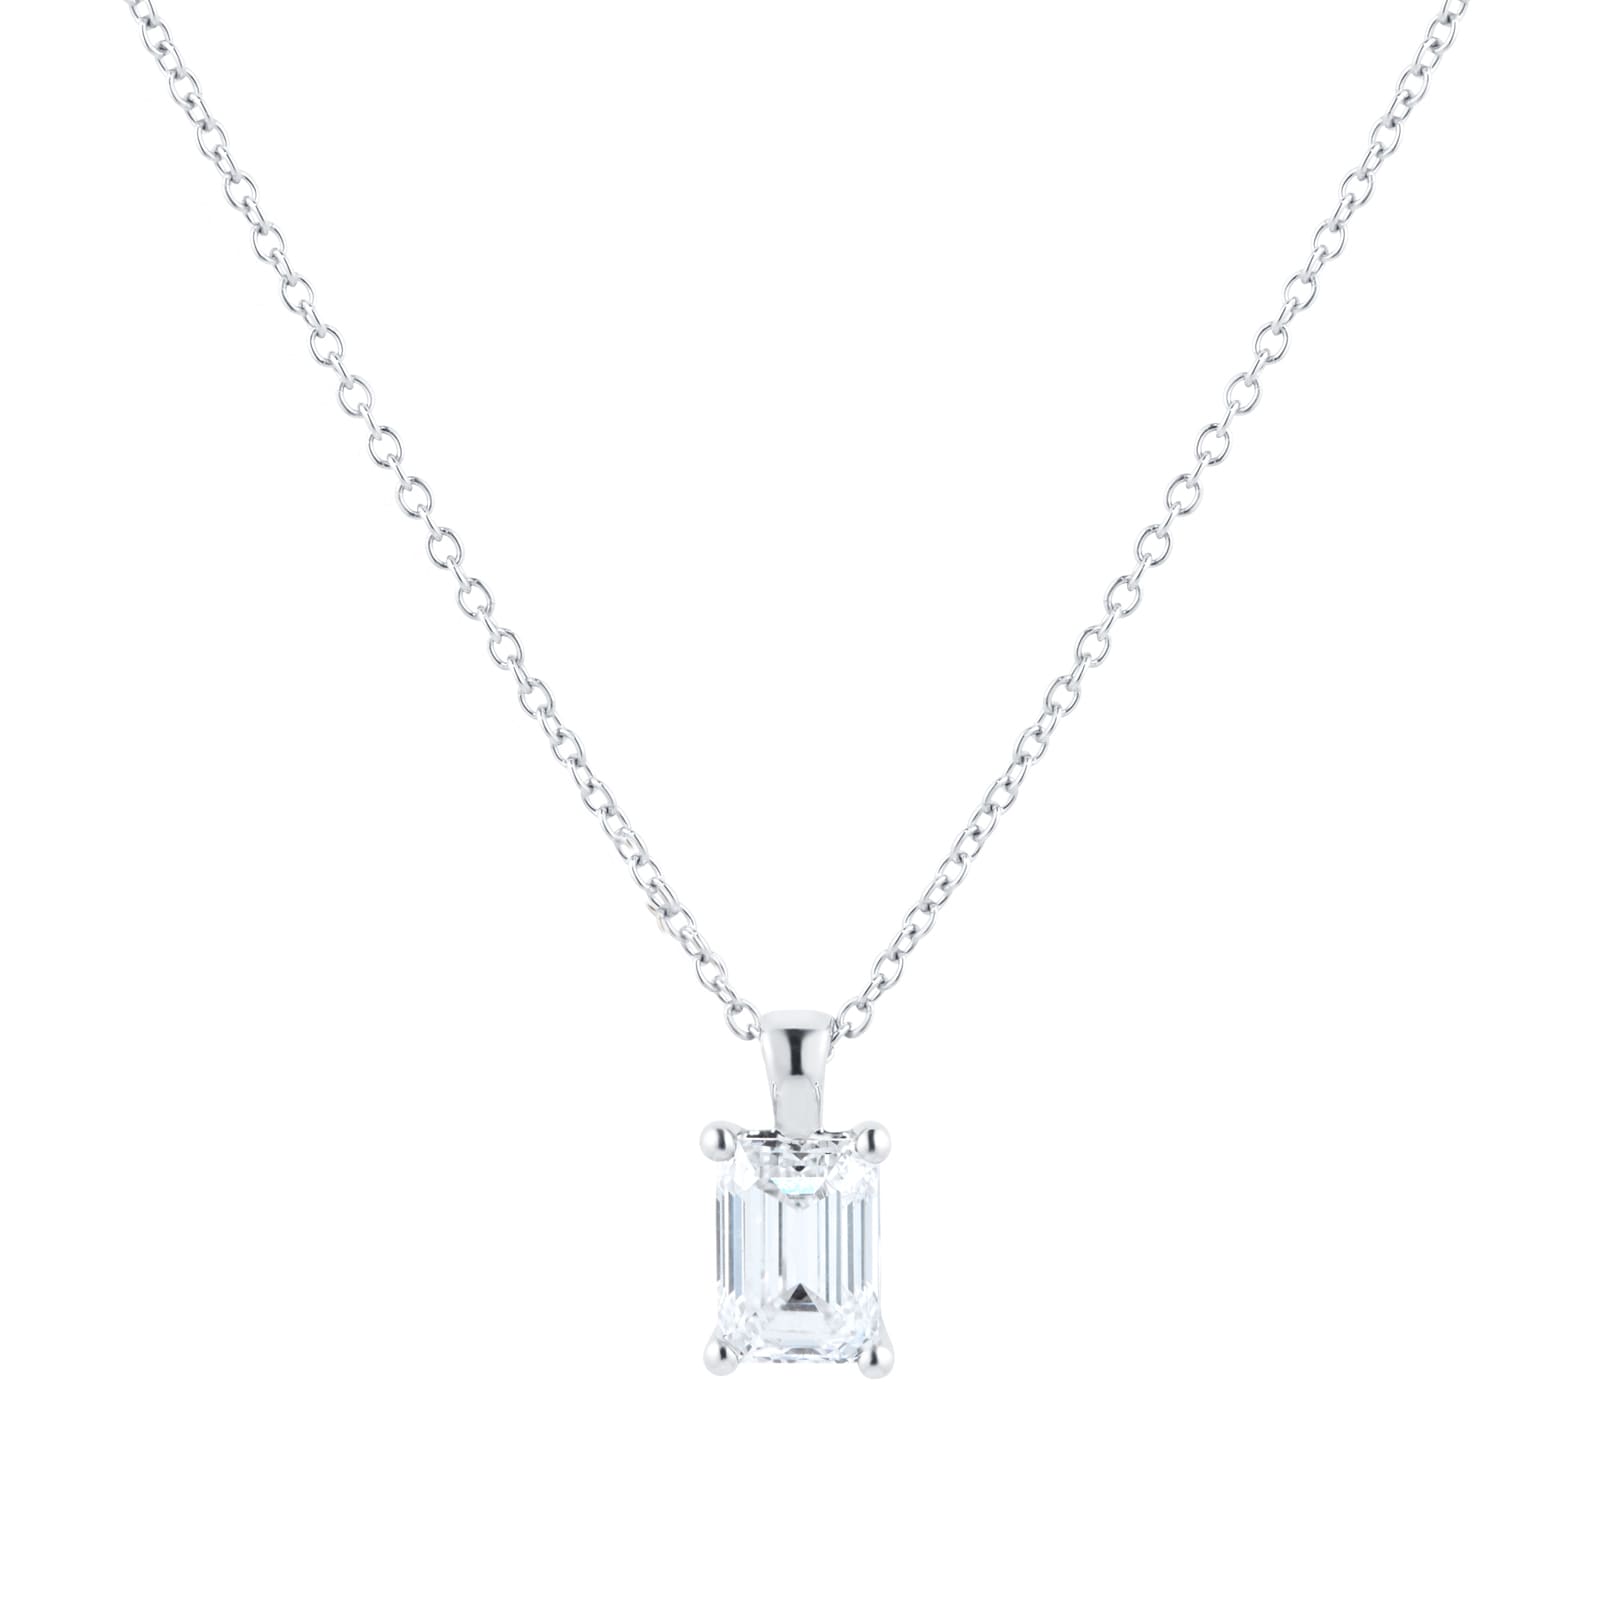 Platinum 1.50cttw Emerald Cut Diamond Pendant